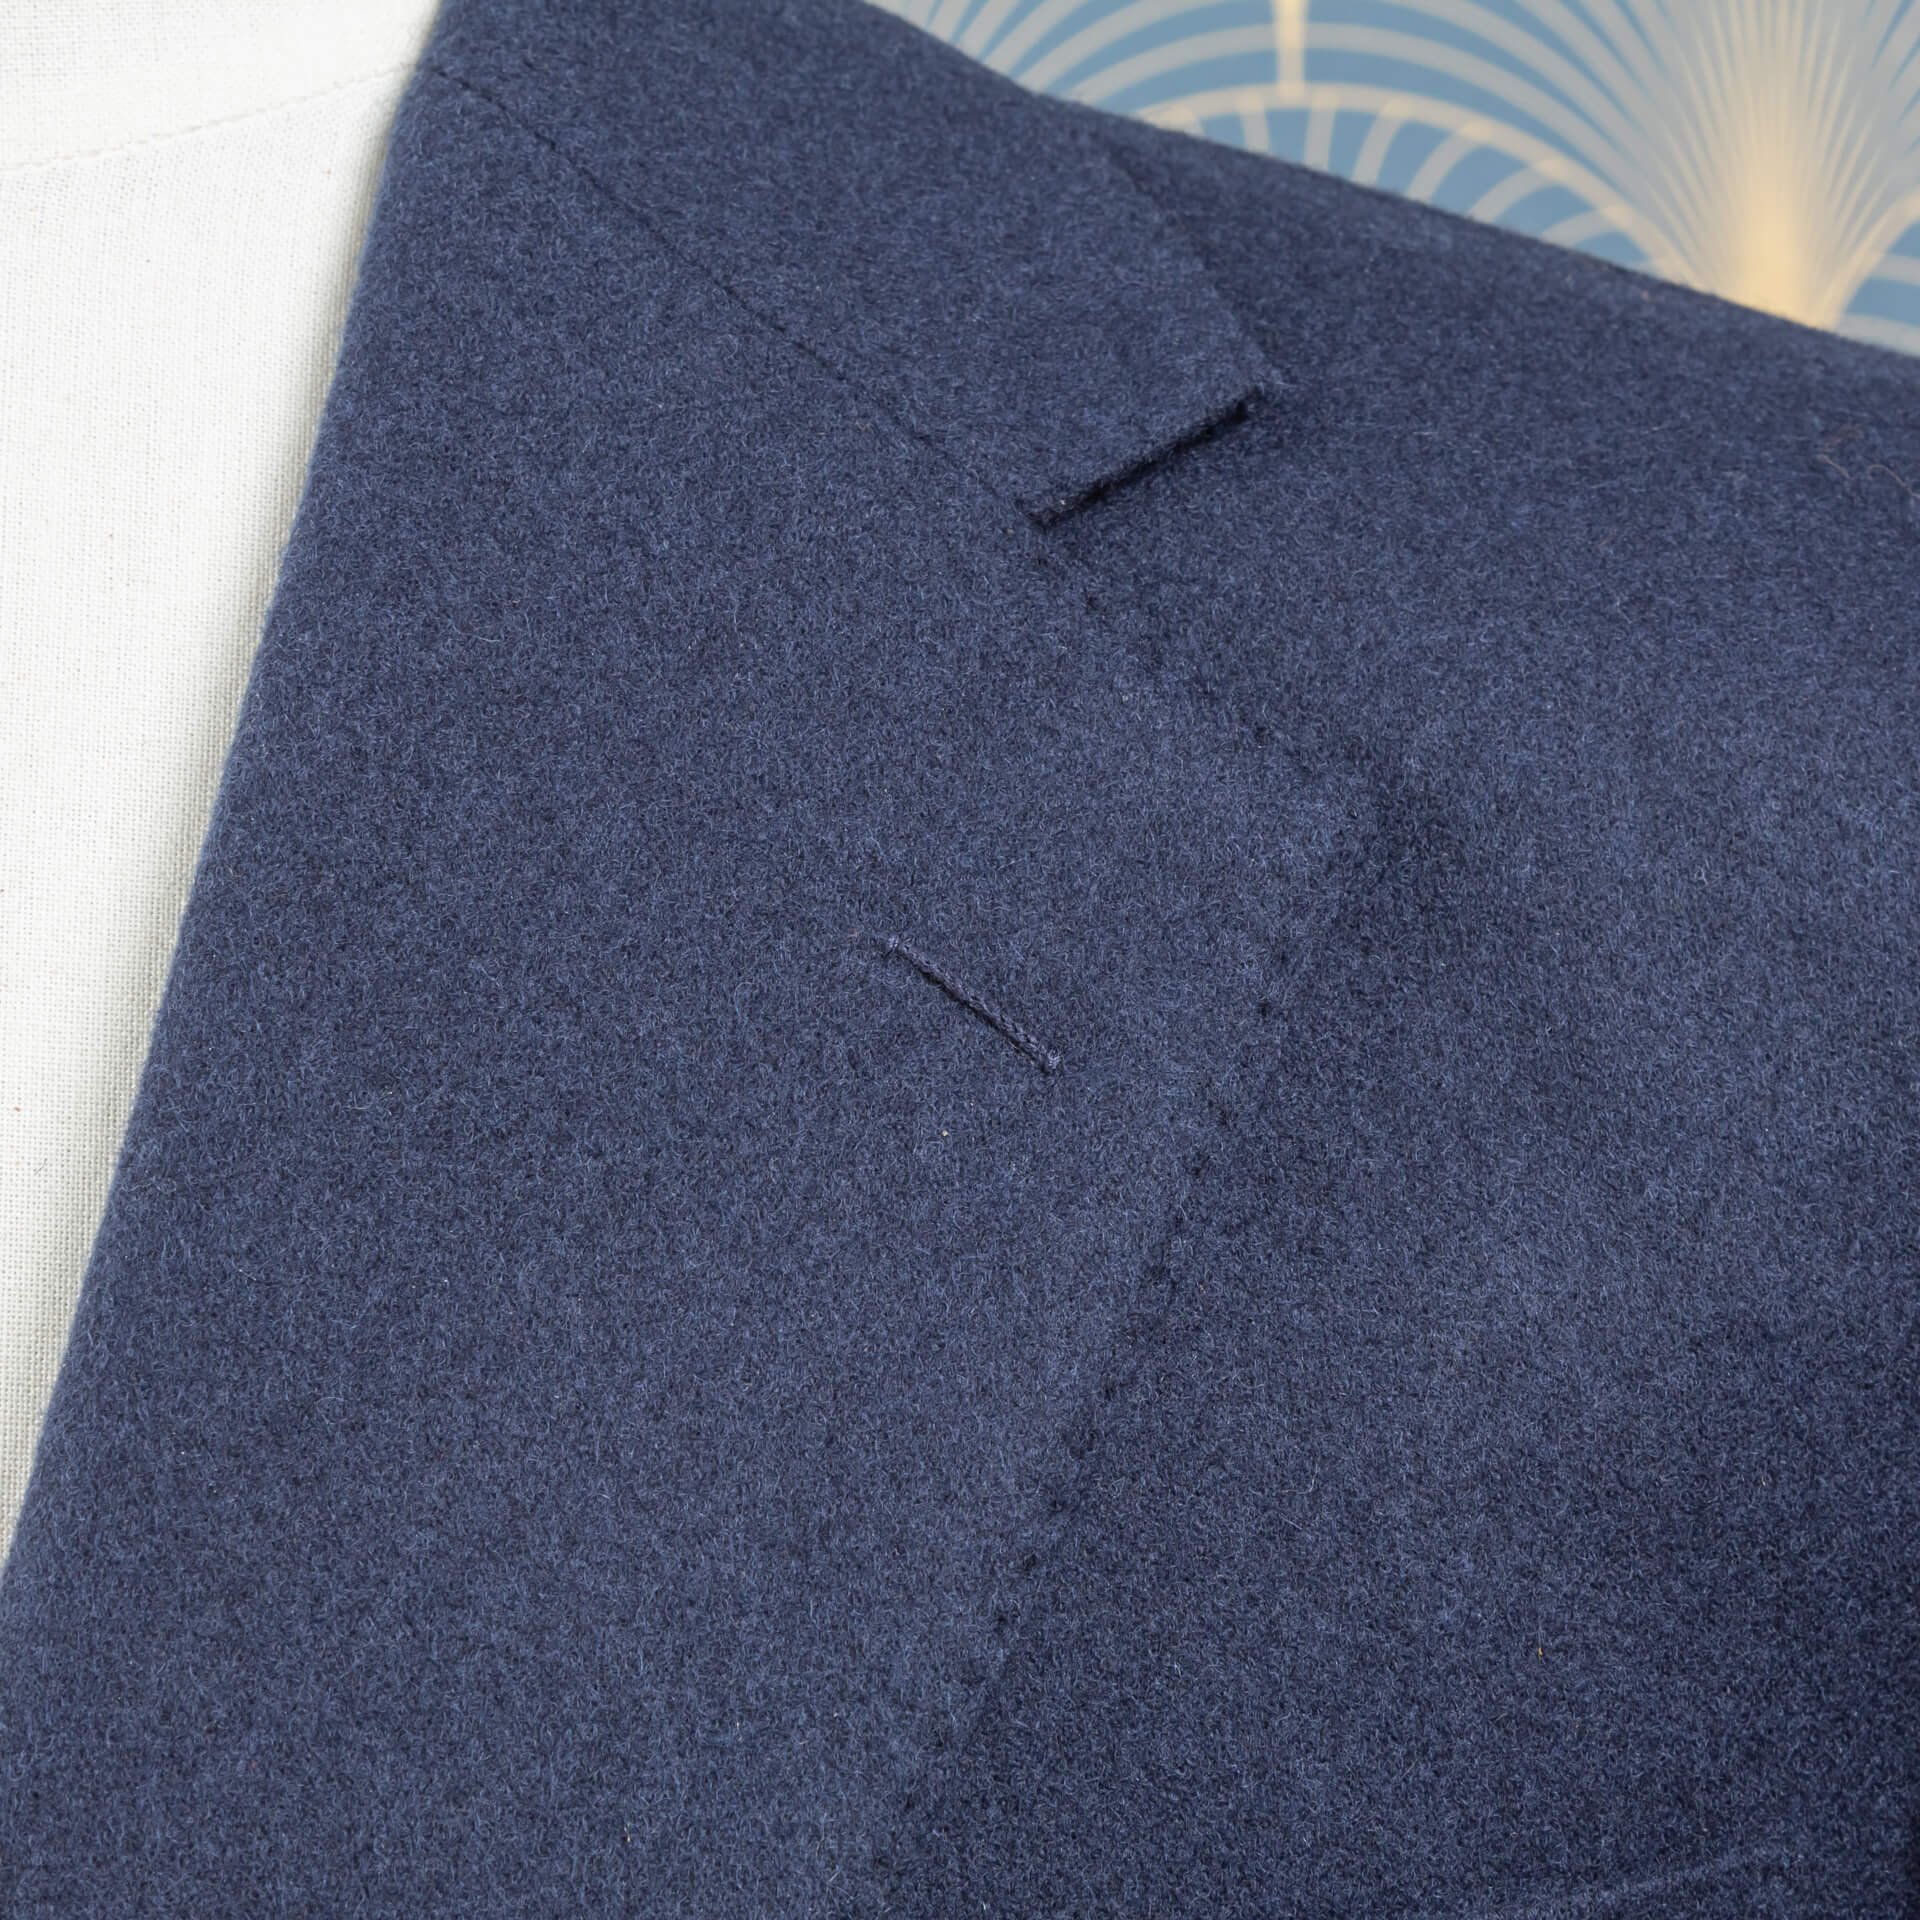 Blauwe flanel stof voor een pak gedragen door een ondernemer